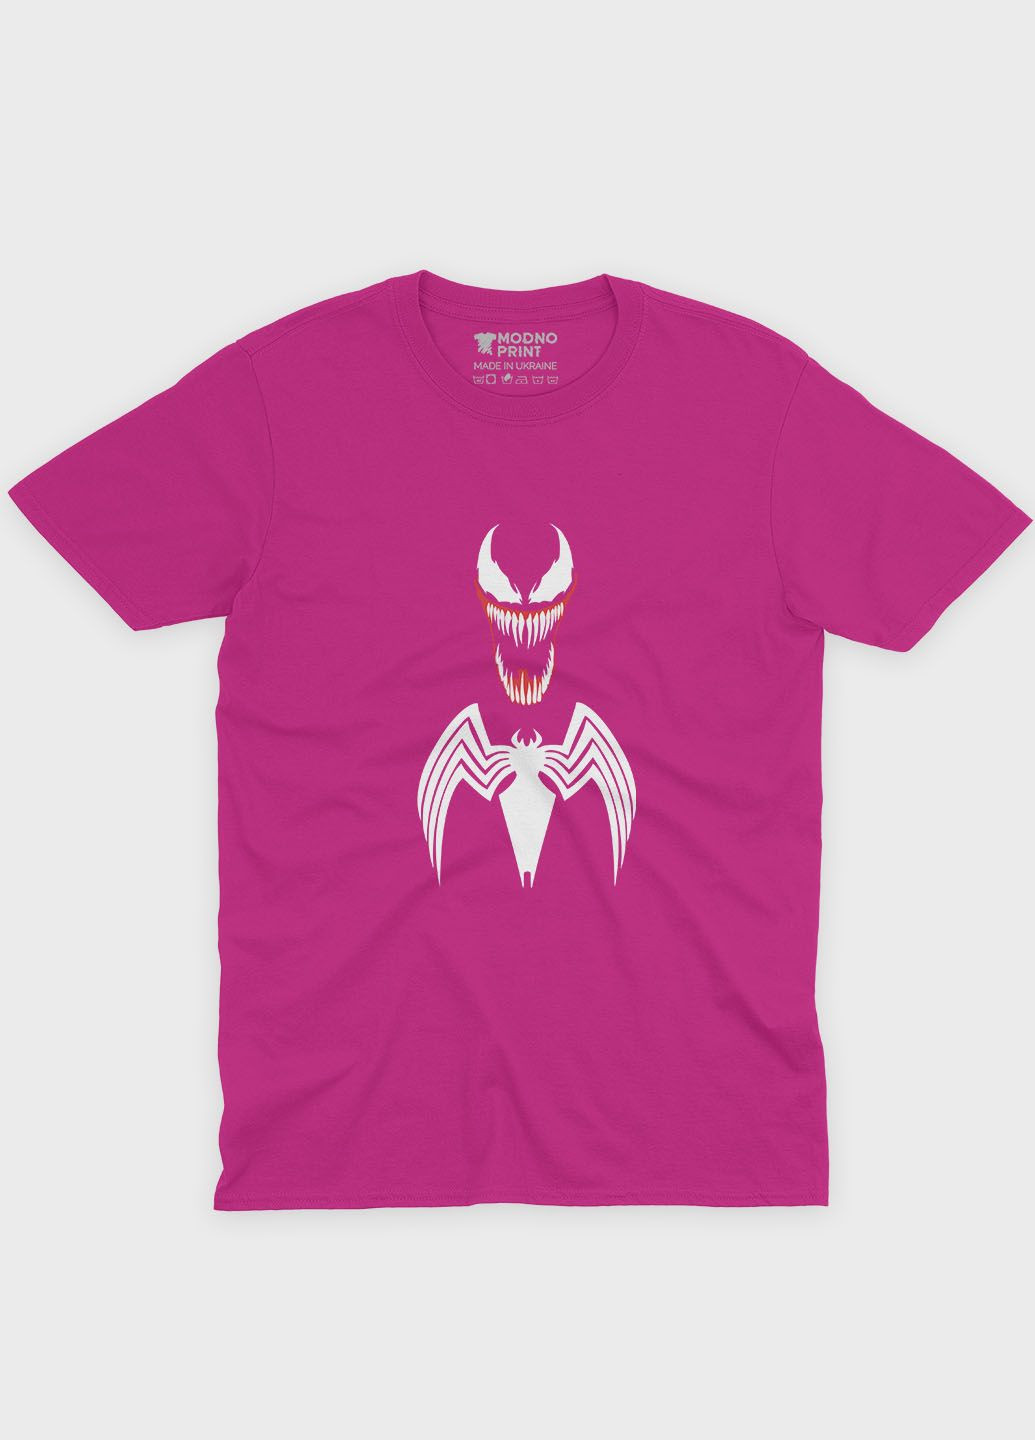 Розовая демисезонная футболка для девочки с принтом супервора - веном (ts001-1-fuxj-006-013-008-g) Modno